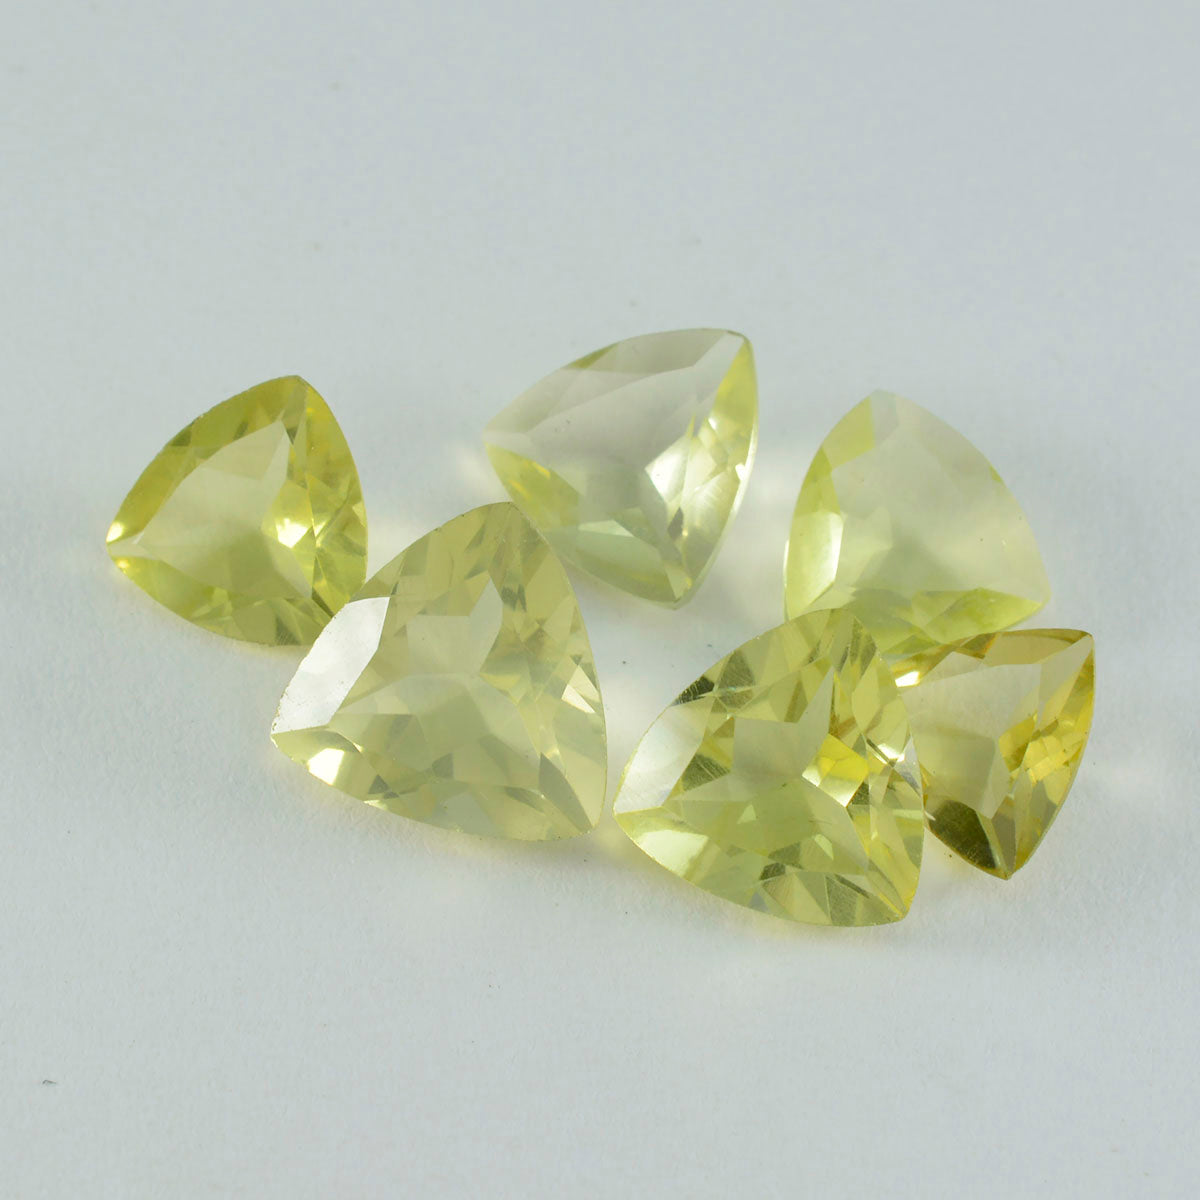 riyogems 1 шт., желтый лимонный кварц, ограненный 6x6 мм, форма триллиона, довольно качественный драгоценный камень